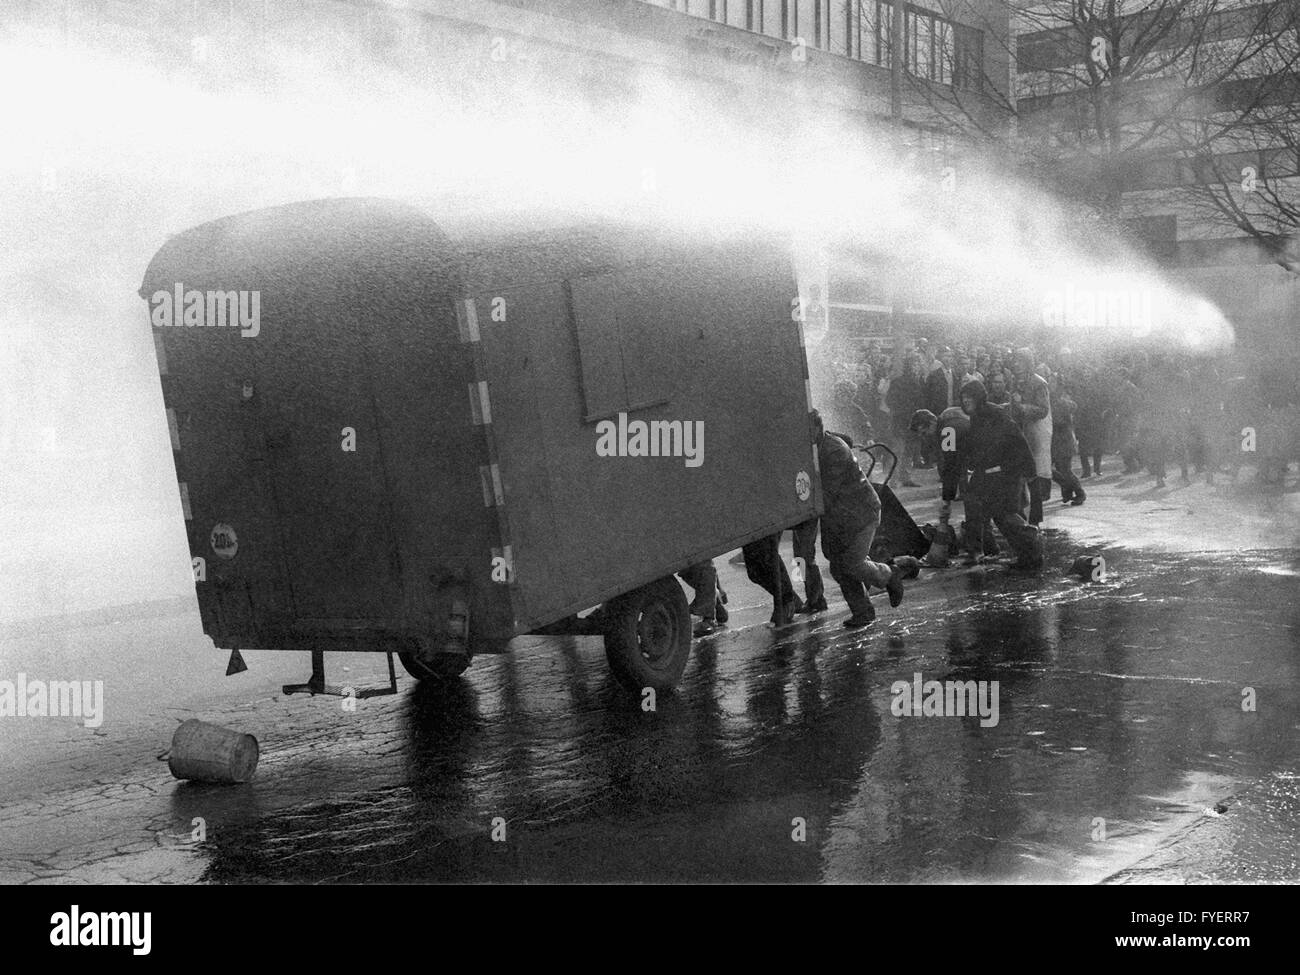 Le produit de la police contre les manifestants avec des pistolets à eau, lors d'une manifestation à l'occasion de l'assassinat sur Rudi Dutschke le 12 avril en 1968. Banque D'Images